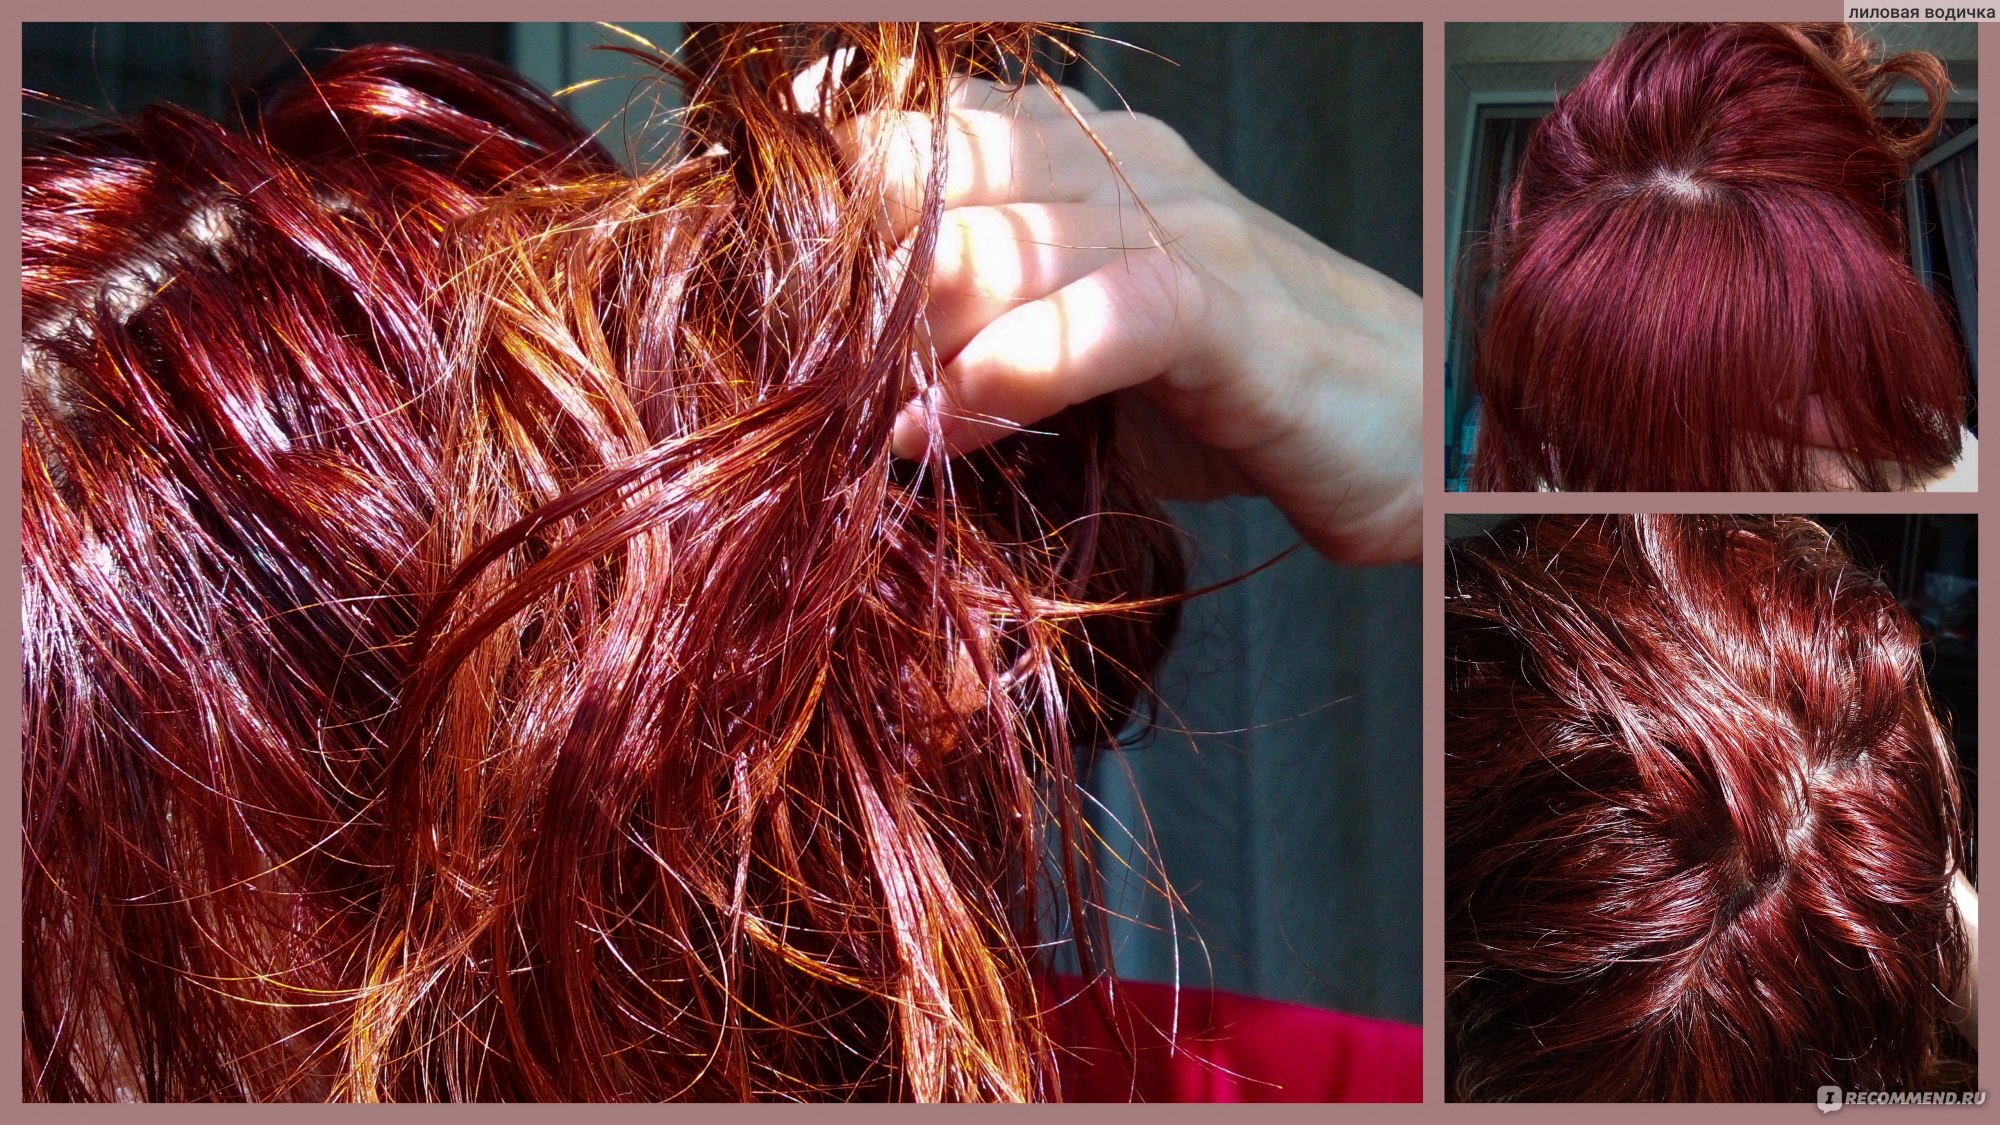 Эстель как вывести рыжий цвет волос